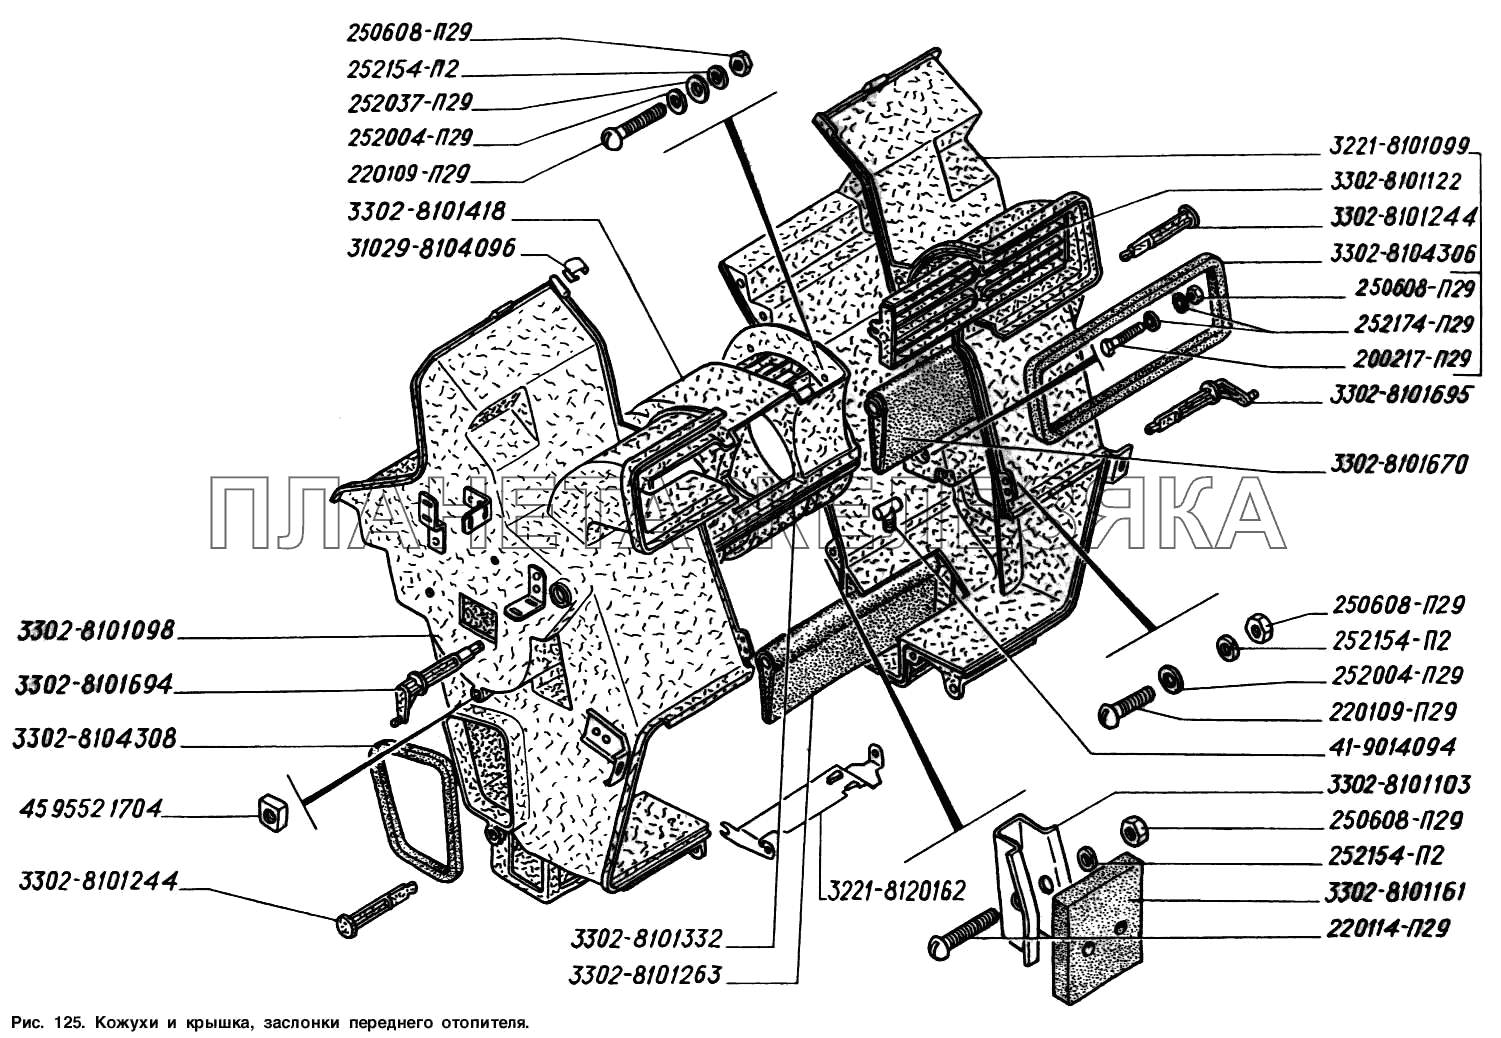 Кожух и крышка, заслонки переднего отопителя ГАЗ-2217 (Соболь)